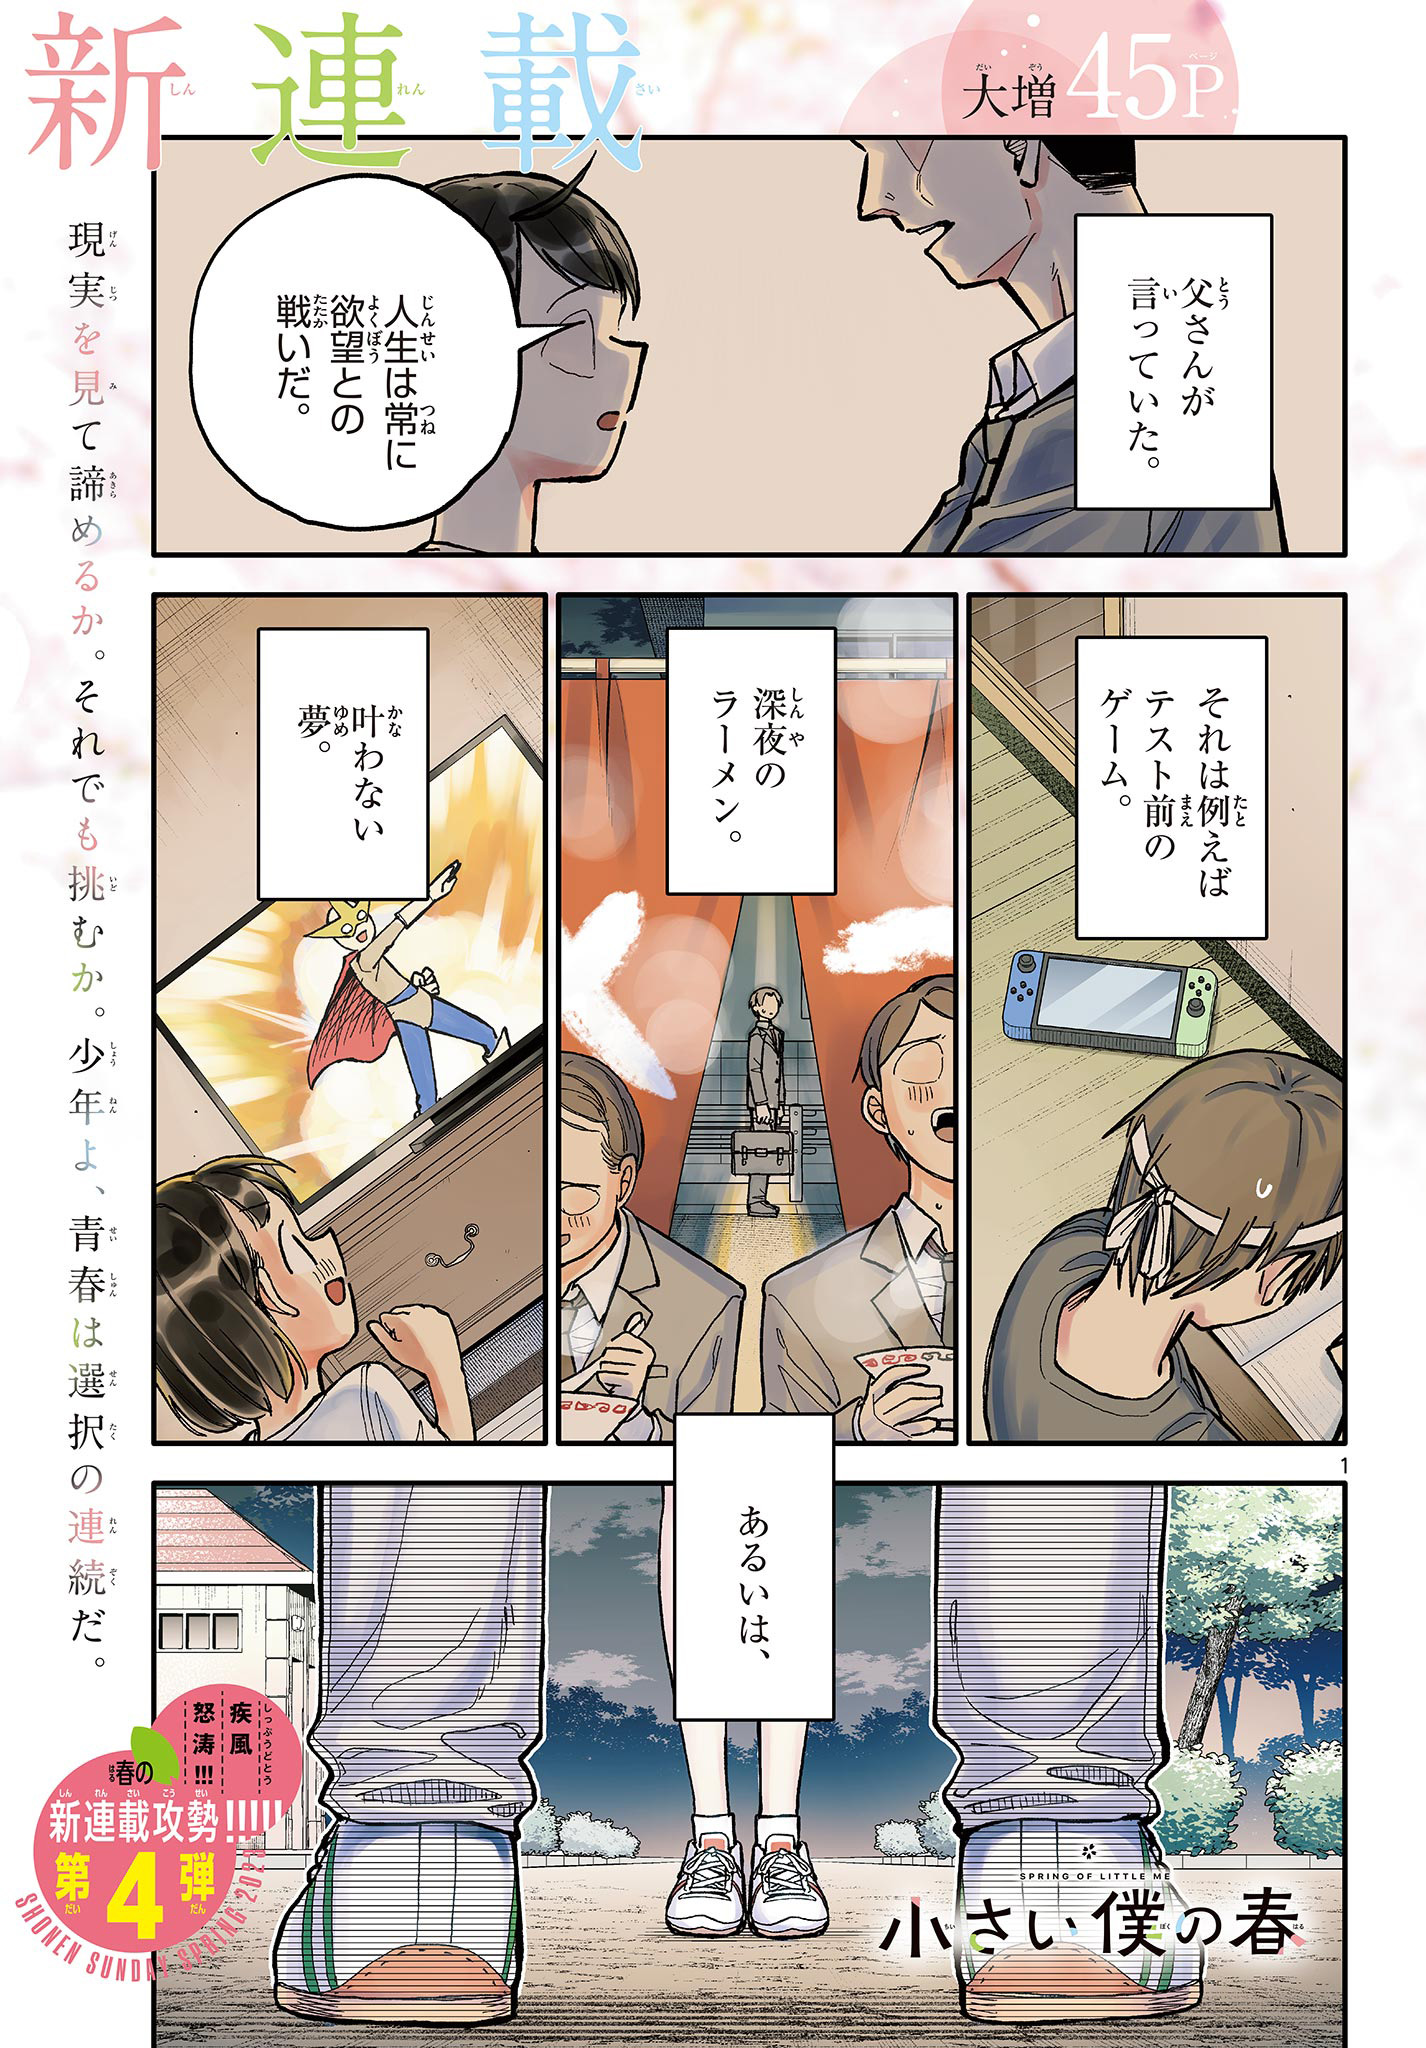 Chiisai Boku no Haru - Chapter 1.1 - Page 1